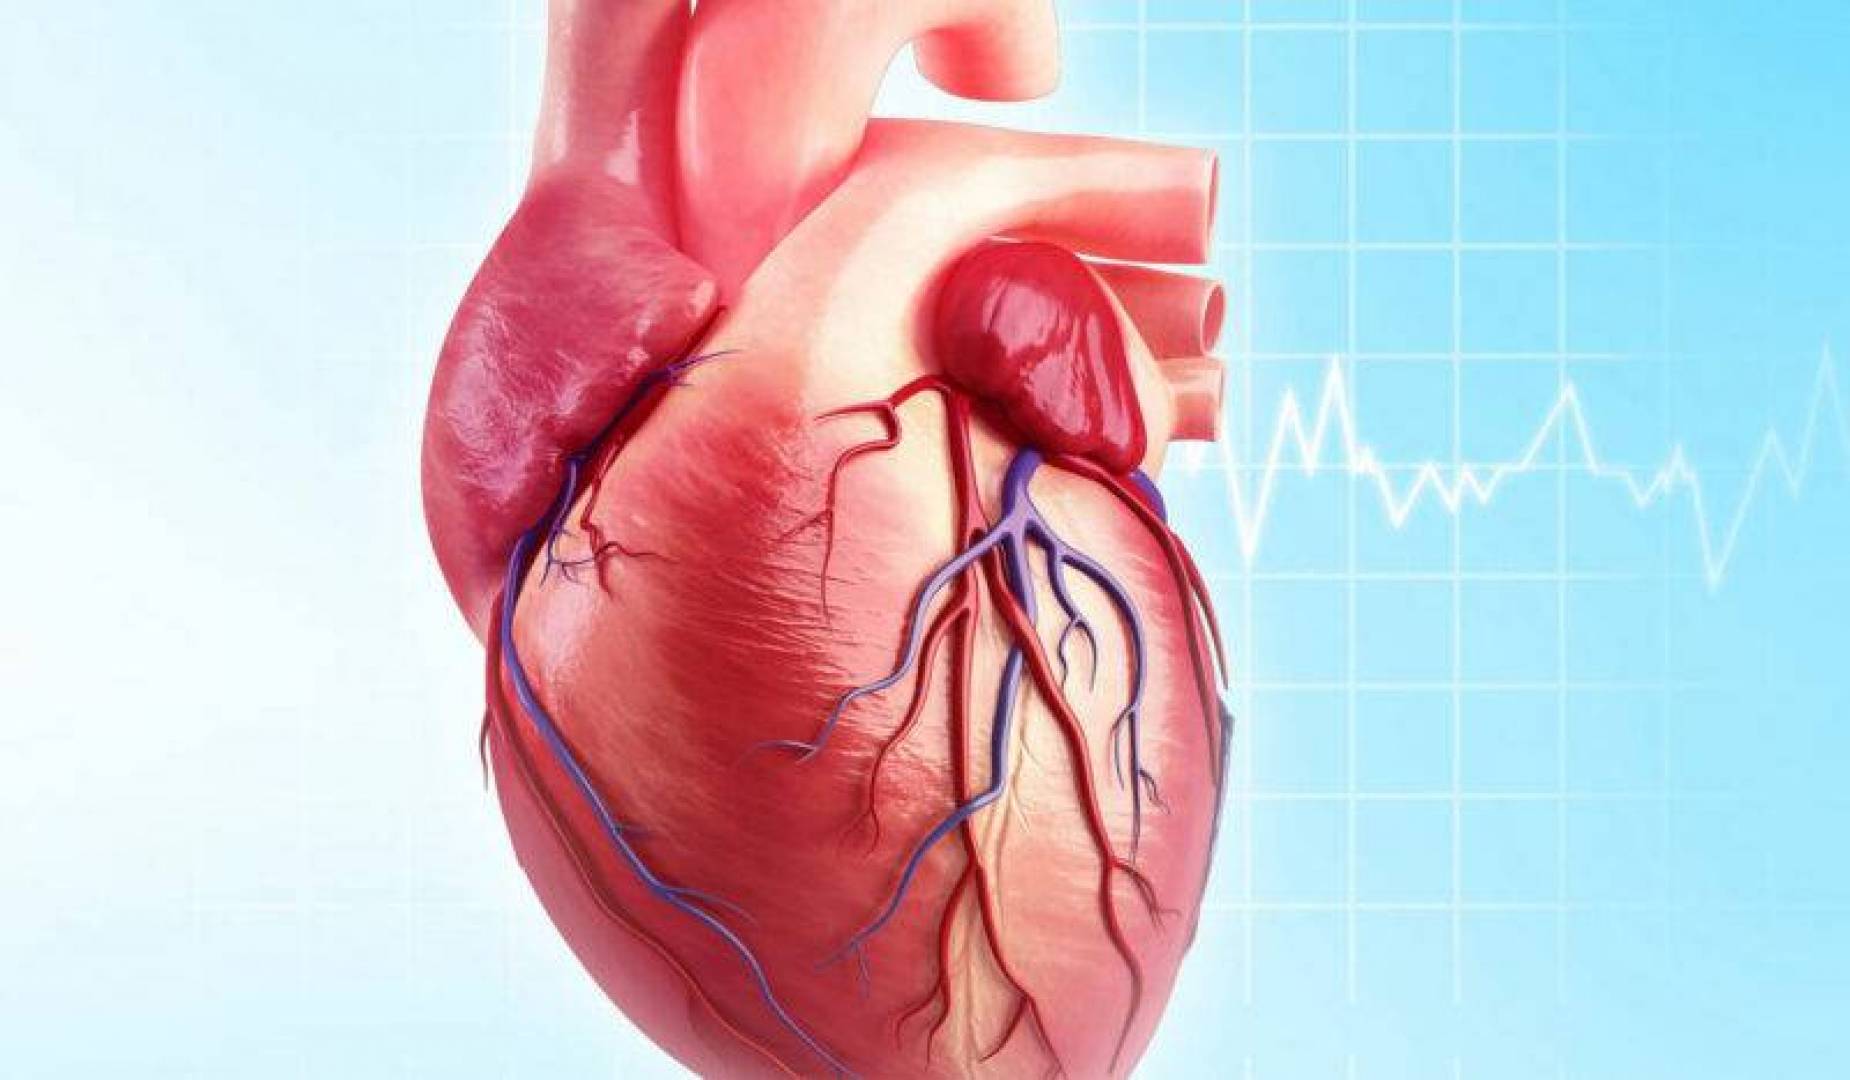 اختبار كيميائي مناعي جديد يكشف عن قصور القلب بسرعة